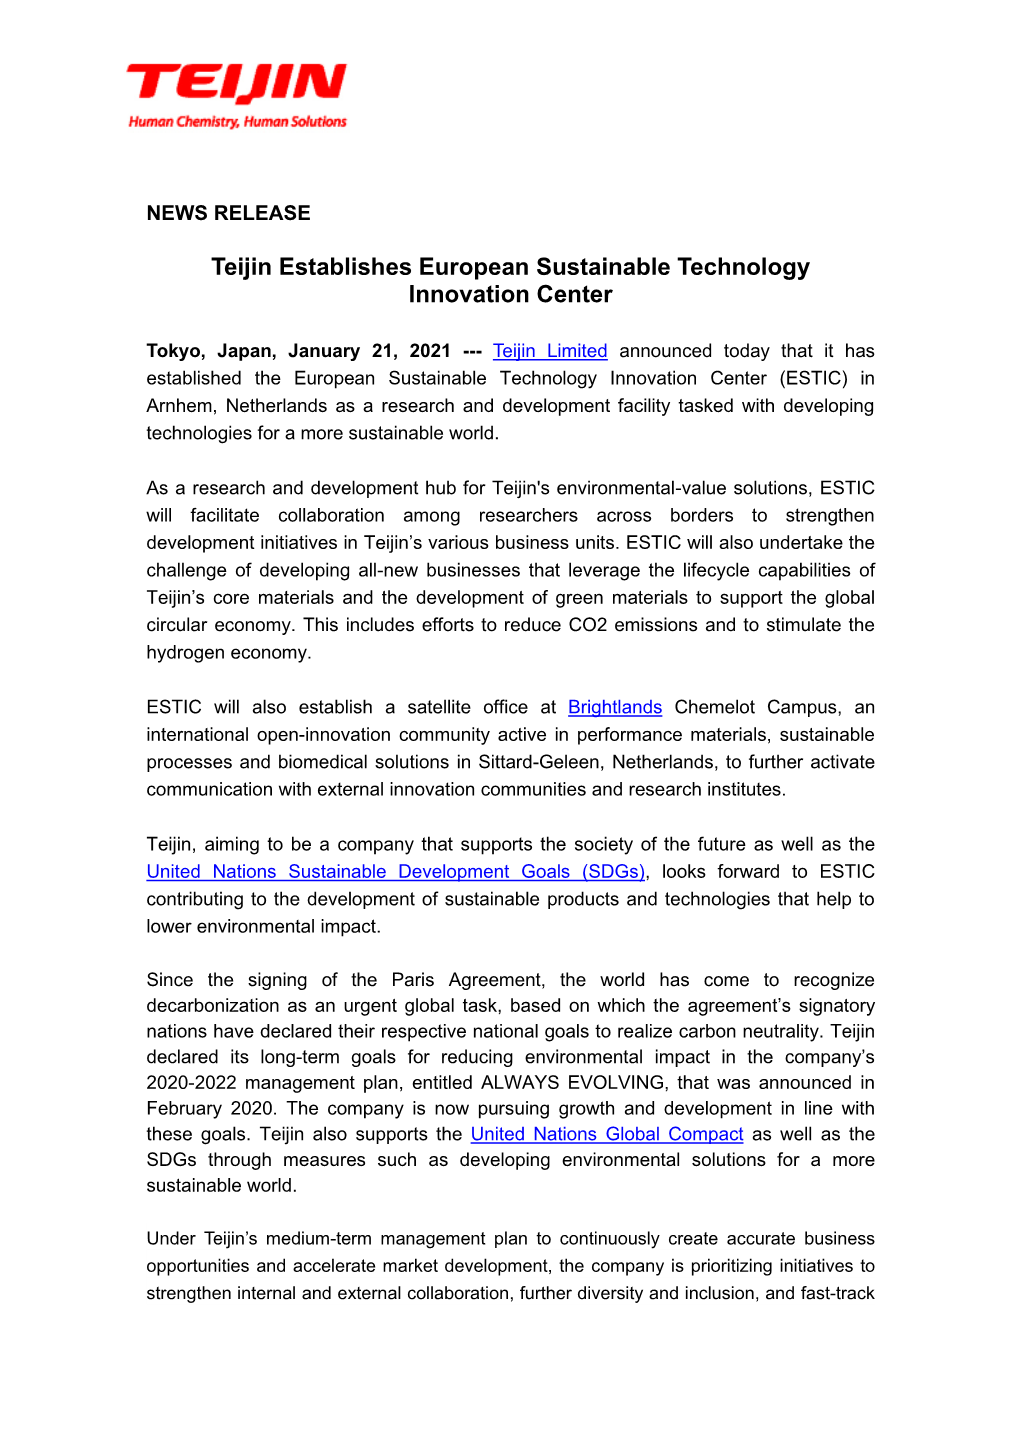 January 21, 2021Materials Teijin Establishes European Sustainable